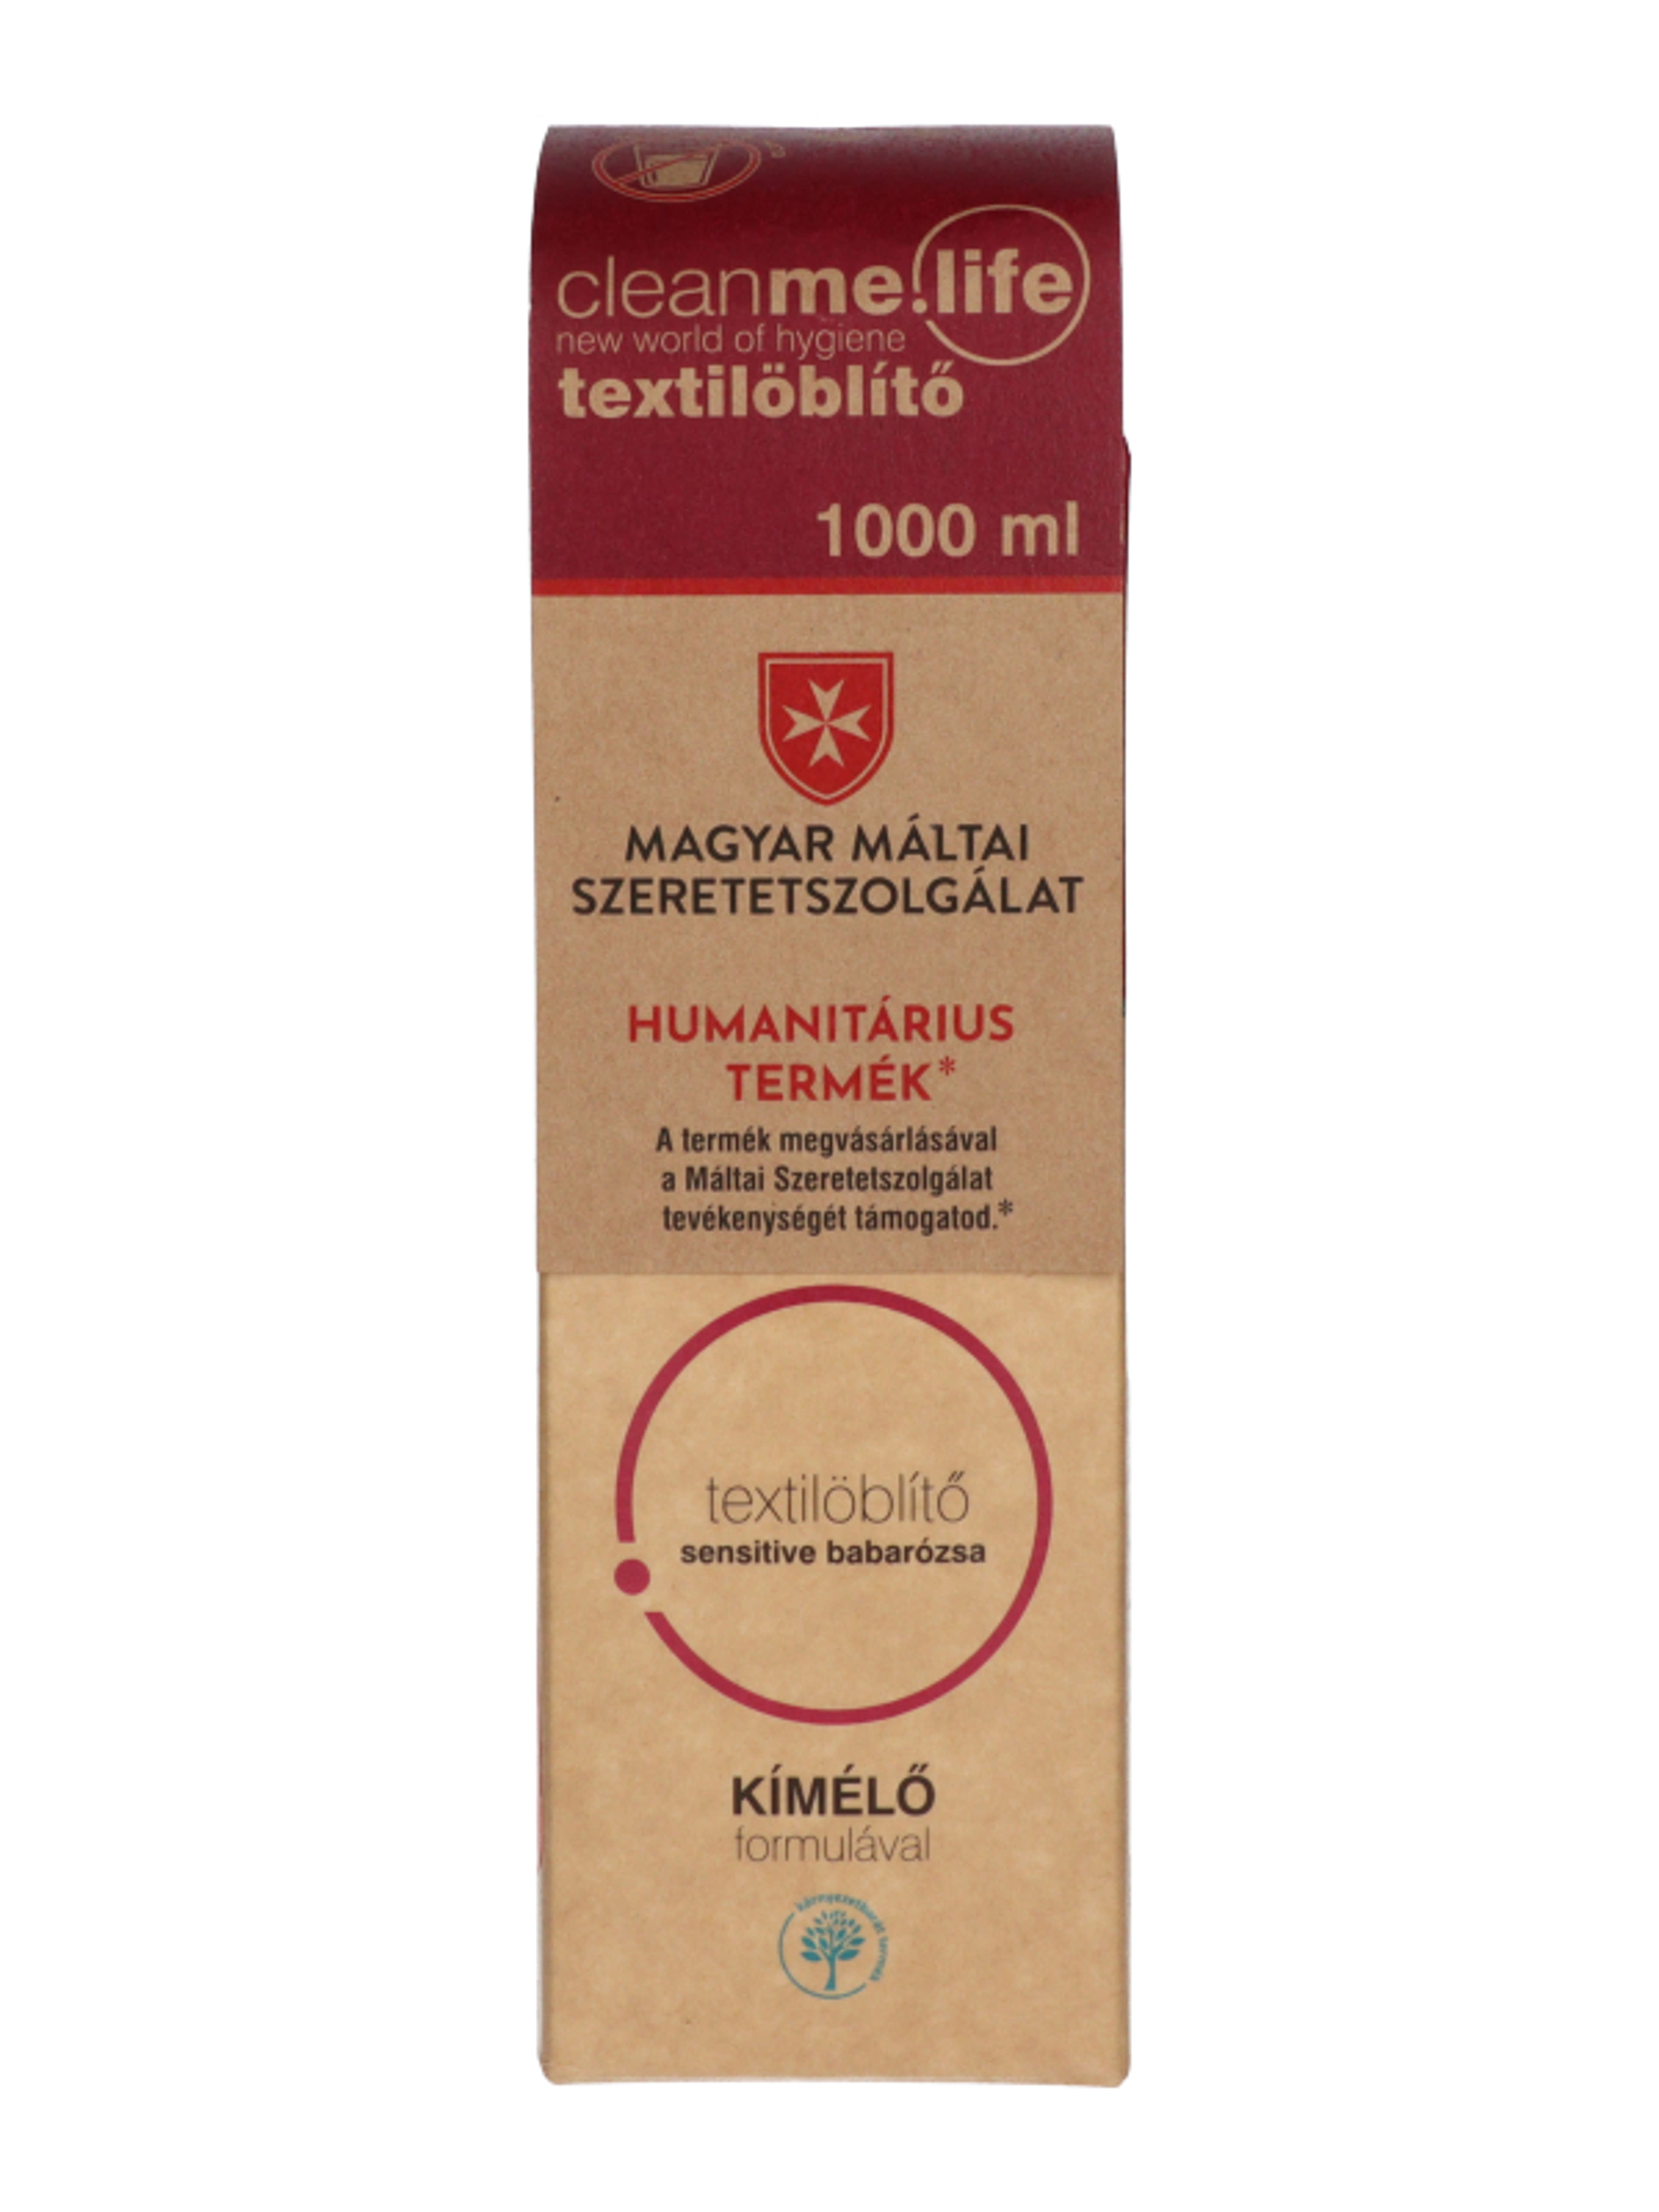 Cleanme Sensitive textilöblítő babarózsa illattal - 1000 ml